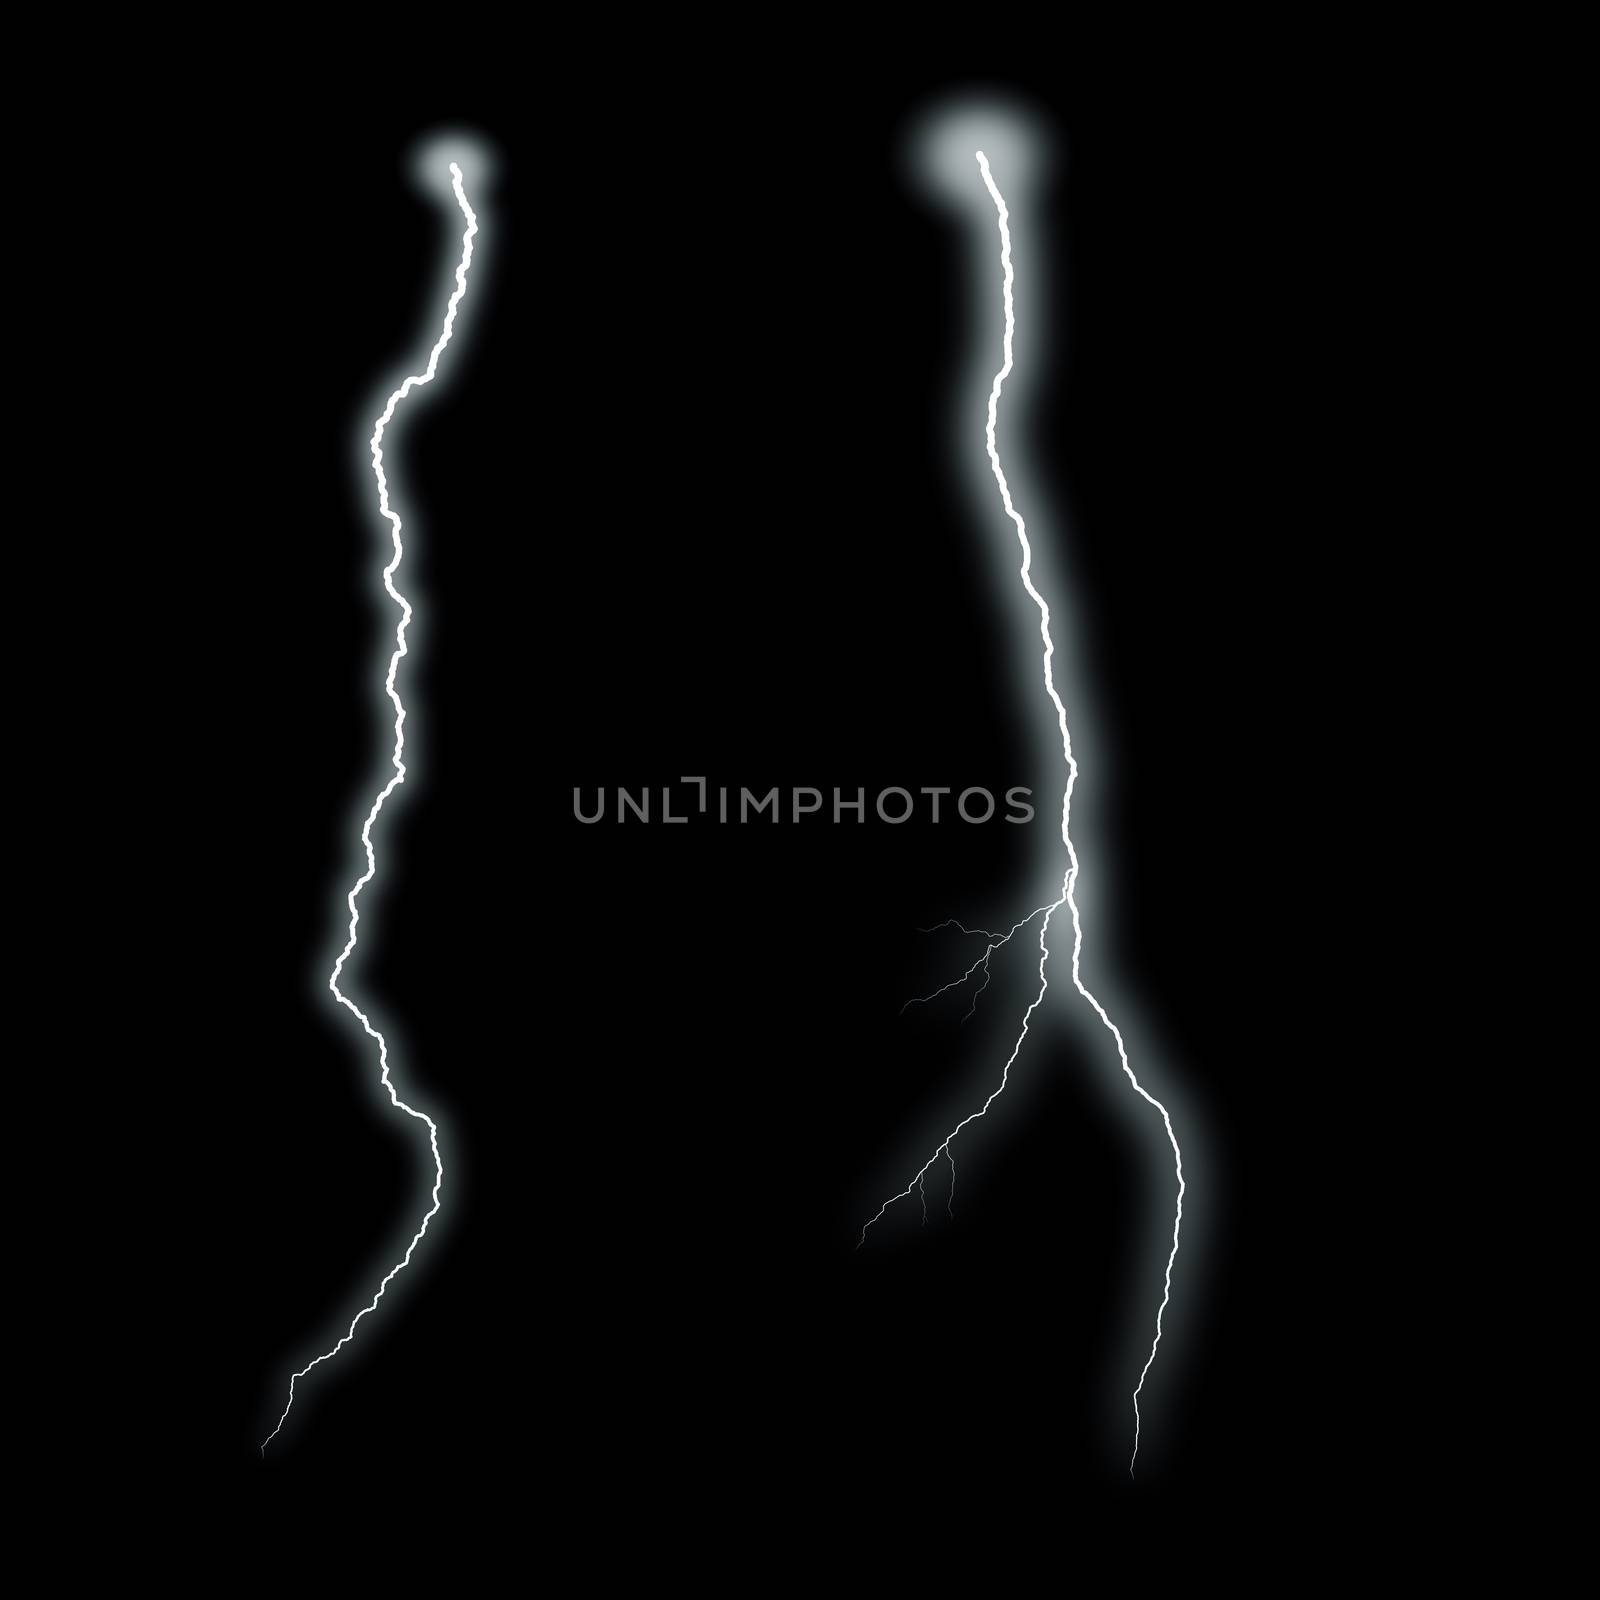 Lightning Isolated over Black Background by whitechild